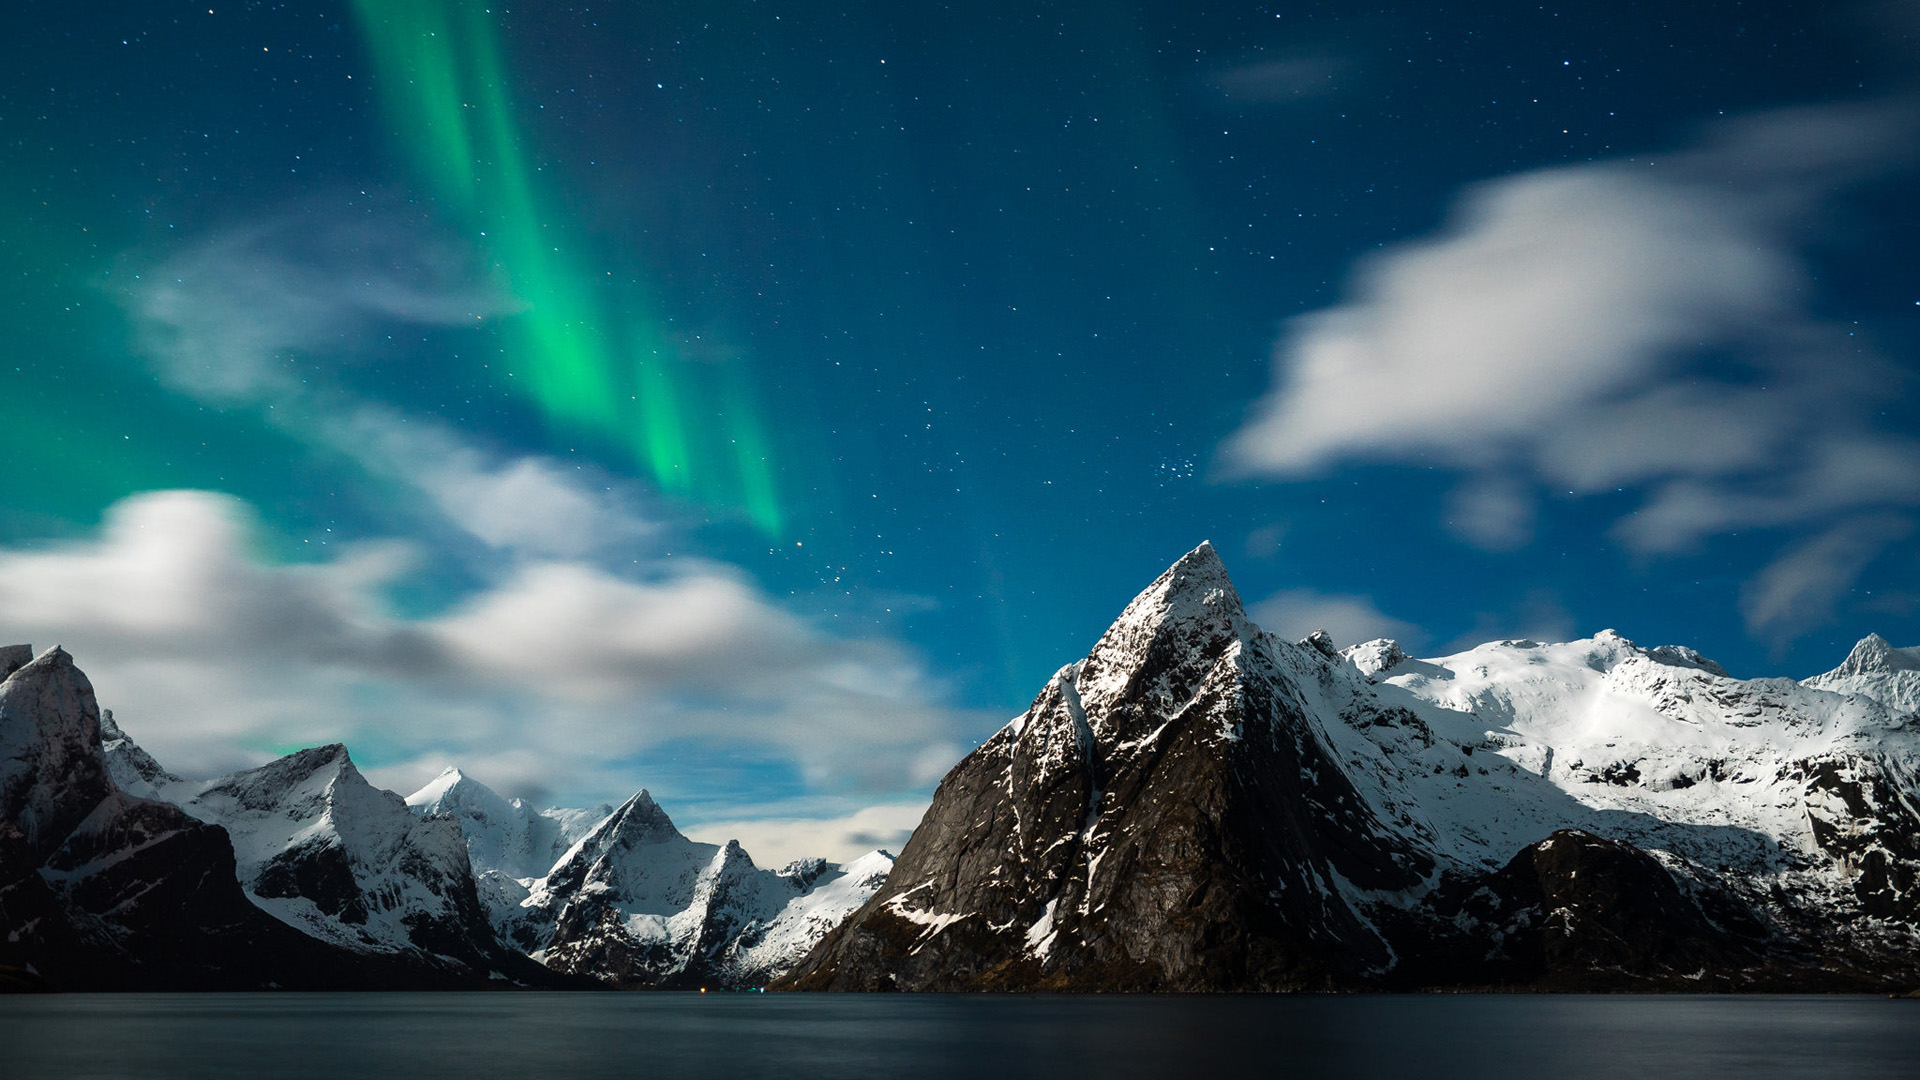 挪威,雪山,湖水,天空,北极光,星星,风景桌面壁纸